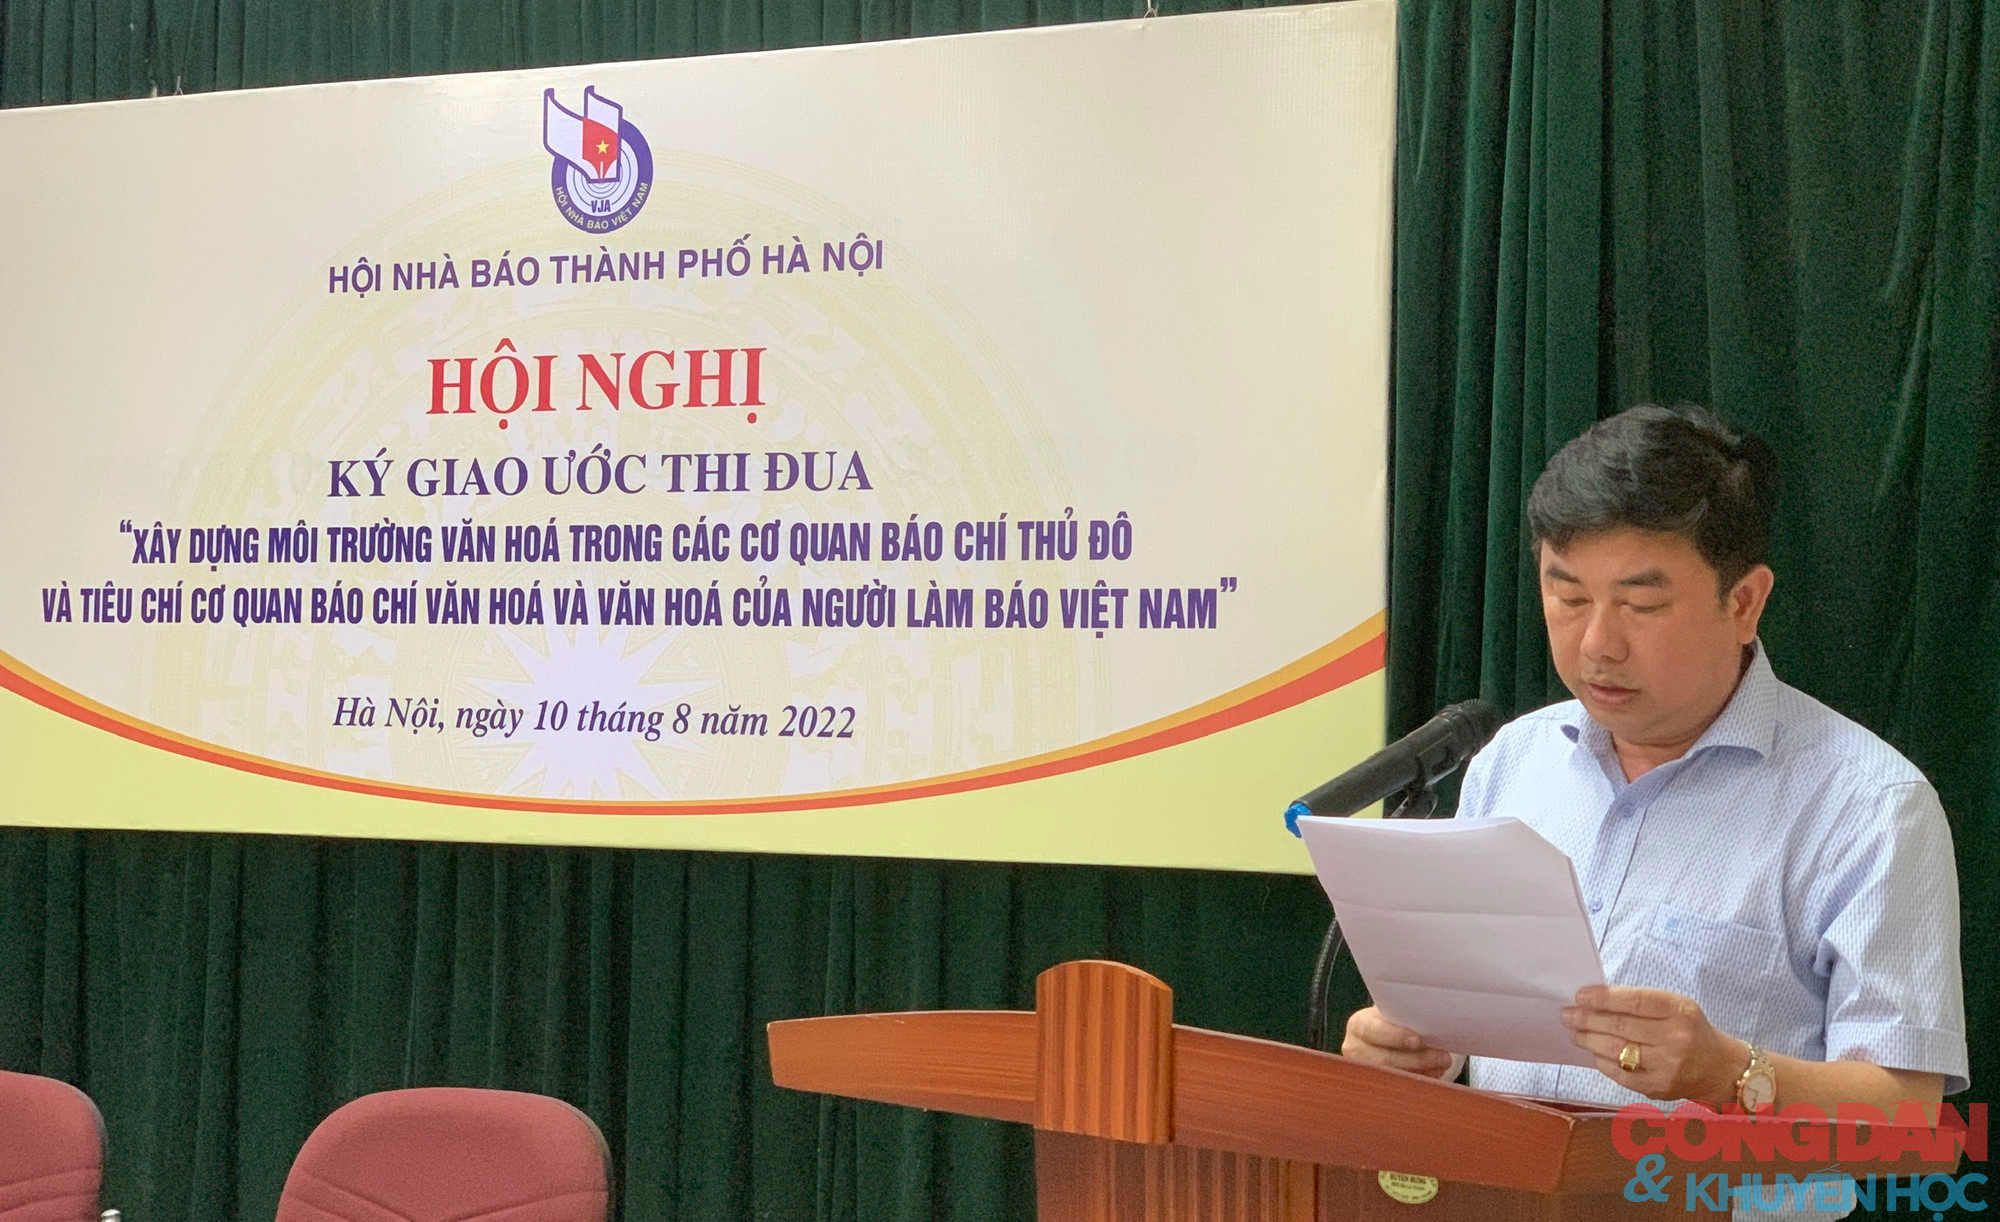 Hà Nội: Xây dựng môi trường văn hóa trong các cơ quan báo chí thủ đô và văn hóa của người làm báo Việt Nam - Ảnh 4.